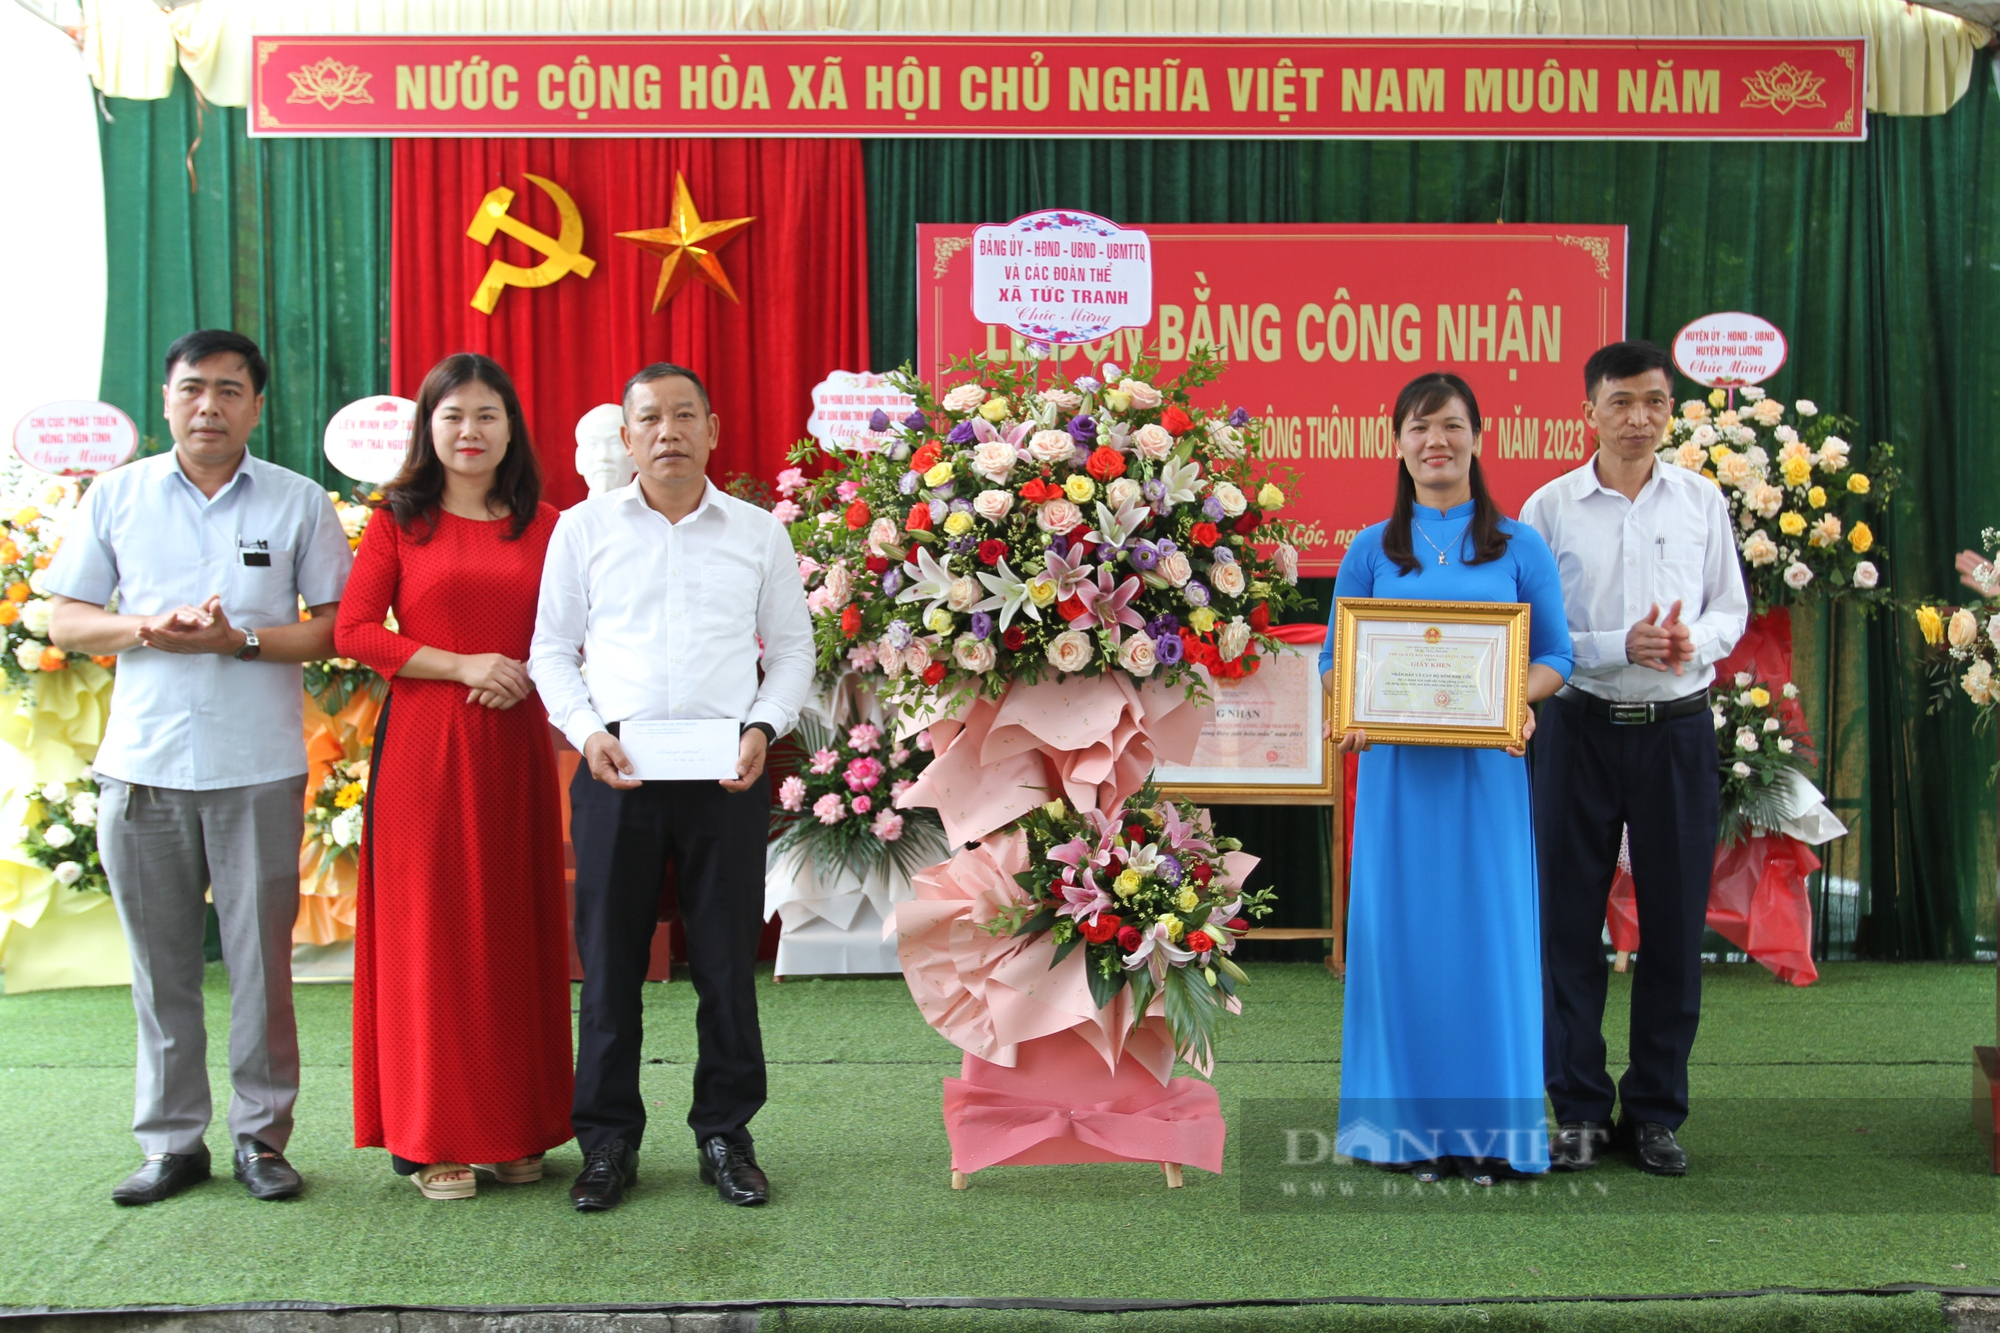 Nông thôn mới Thái Nguyên: Khe Cốc đón bằng công nhận xóm nông thôn mới kiểu mẫu - Ảnh 5.